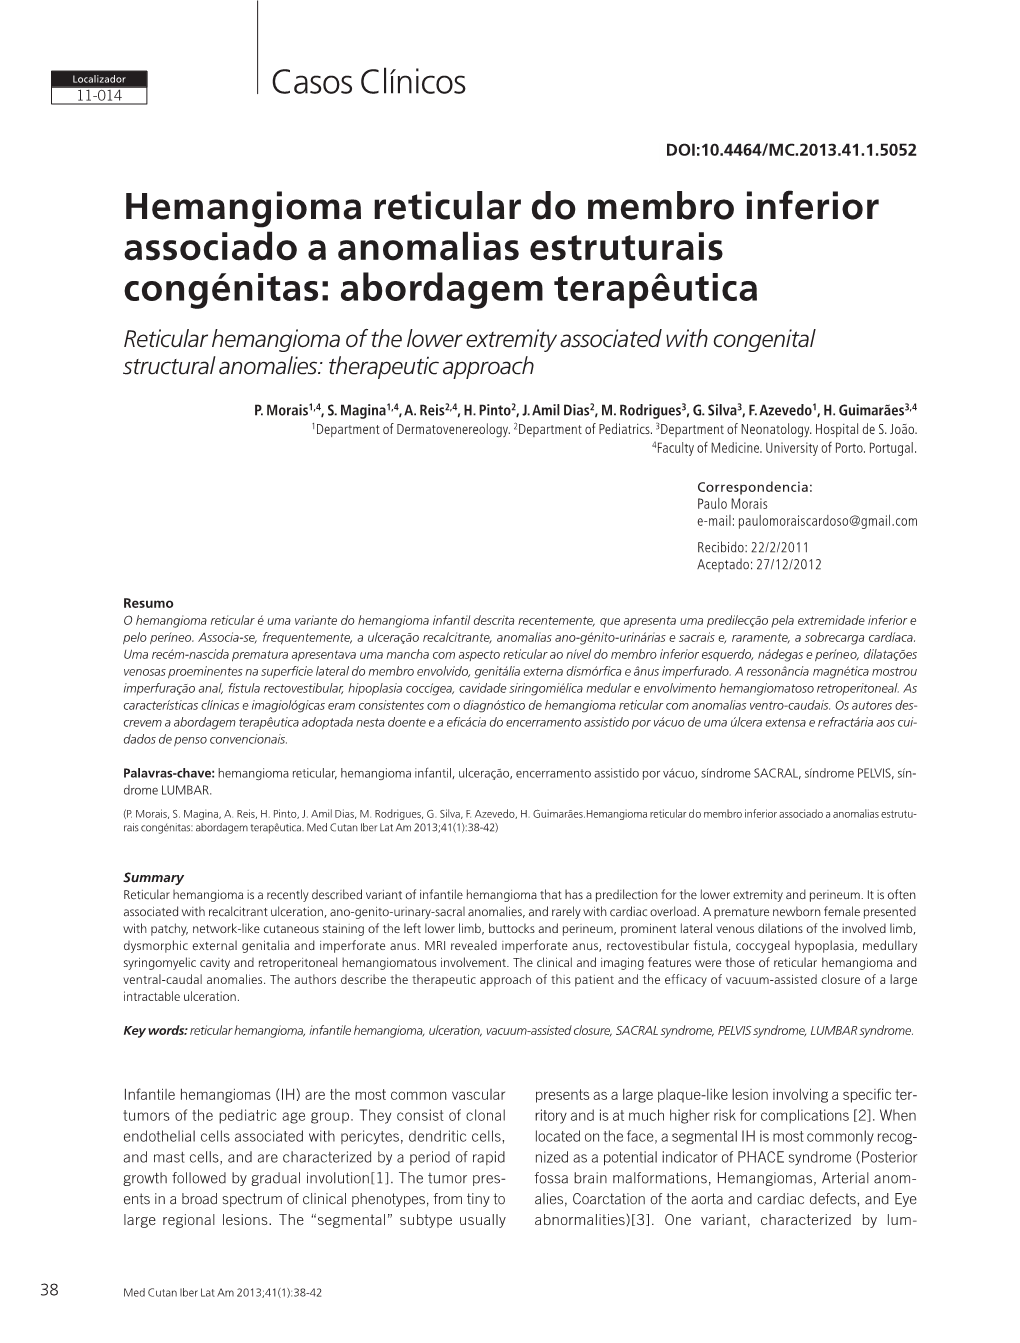 Hemangioma Reticular Do Membro Inferior Associado a Anomalias